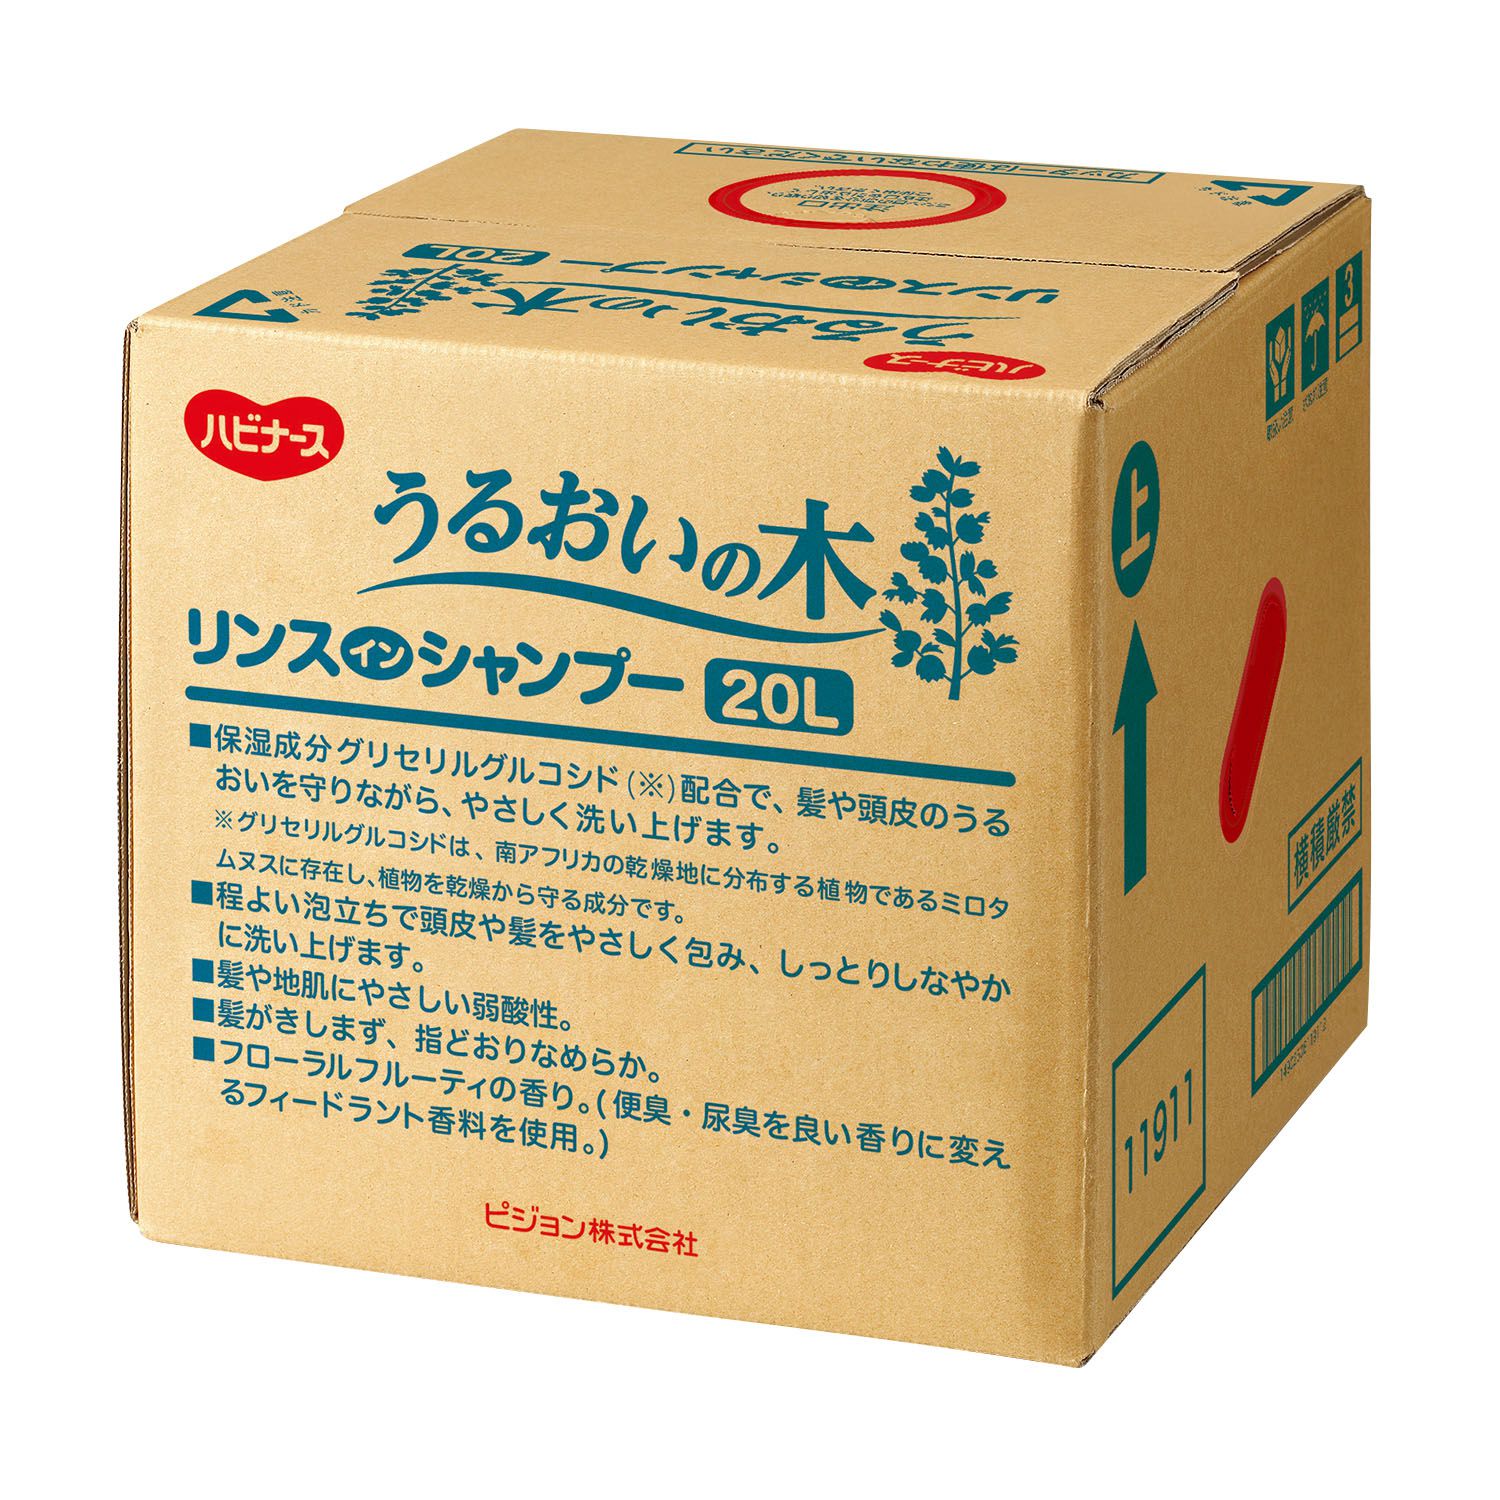 【大型配送】うるおいの木リンスインシャンプー 11187(20L)